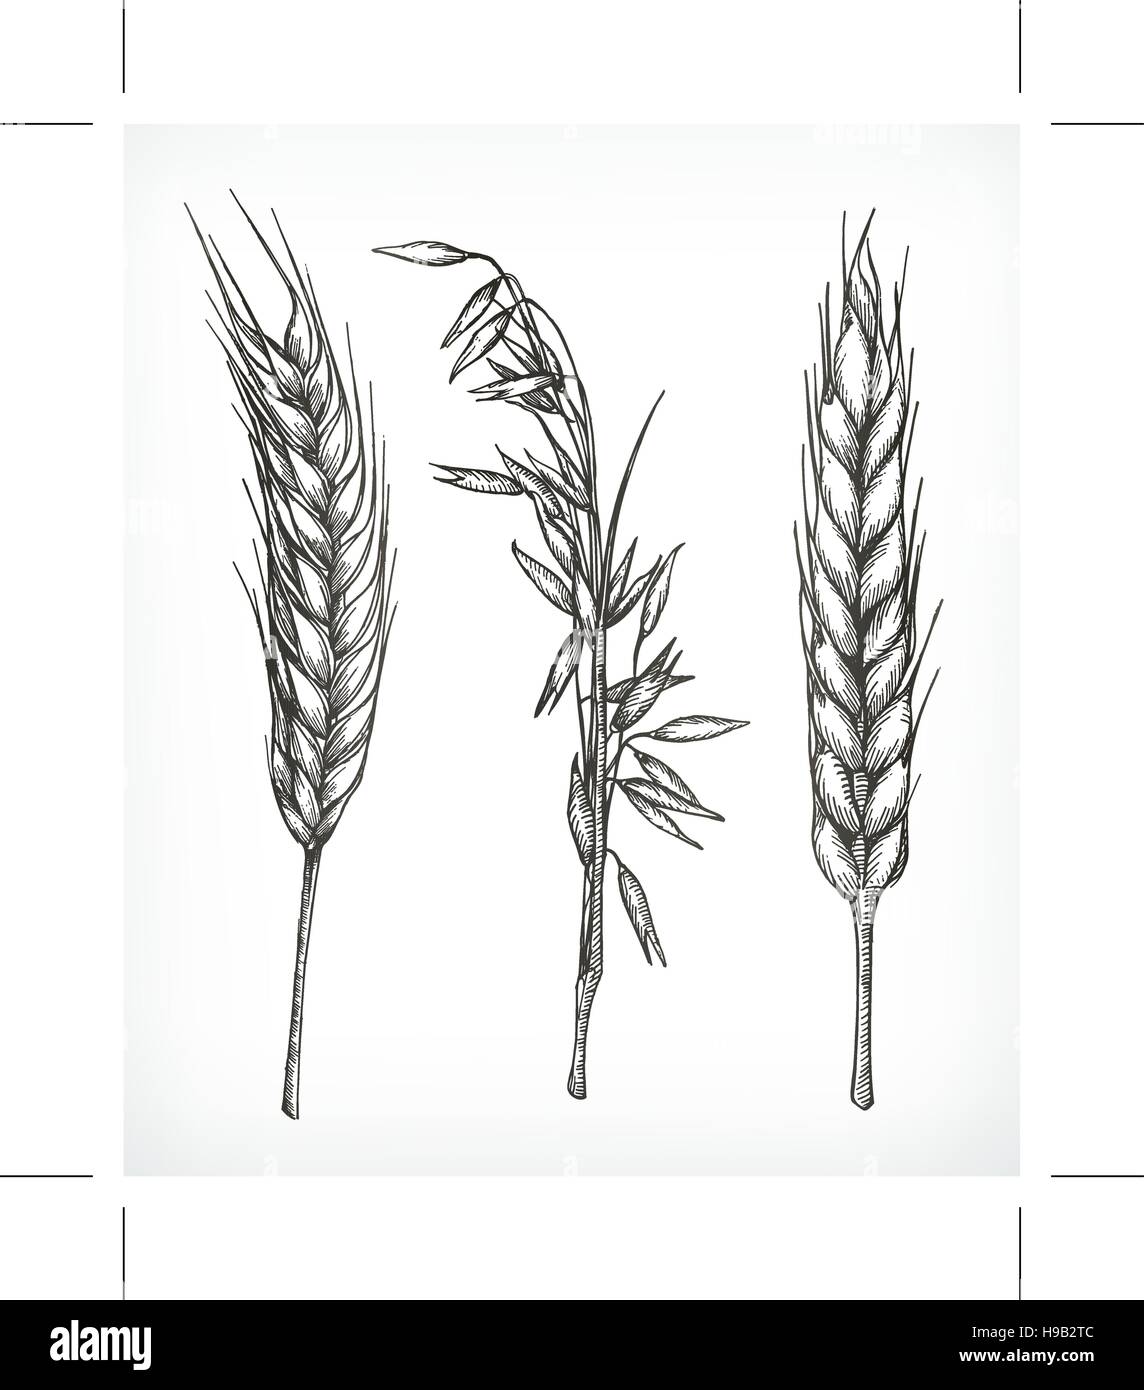 Getreide, Weizen und Hafer Skizzen, Handzeichnung, Vektor-set Stock Vektor